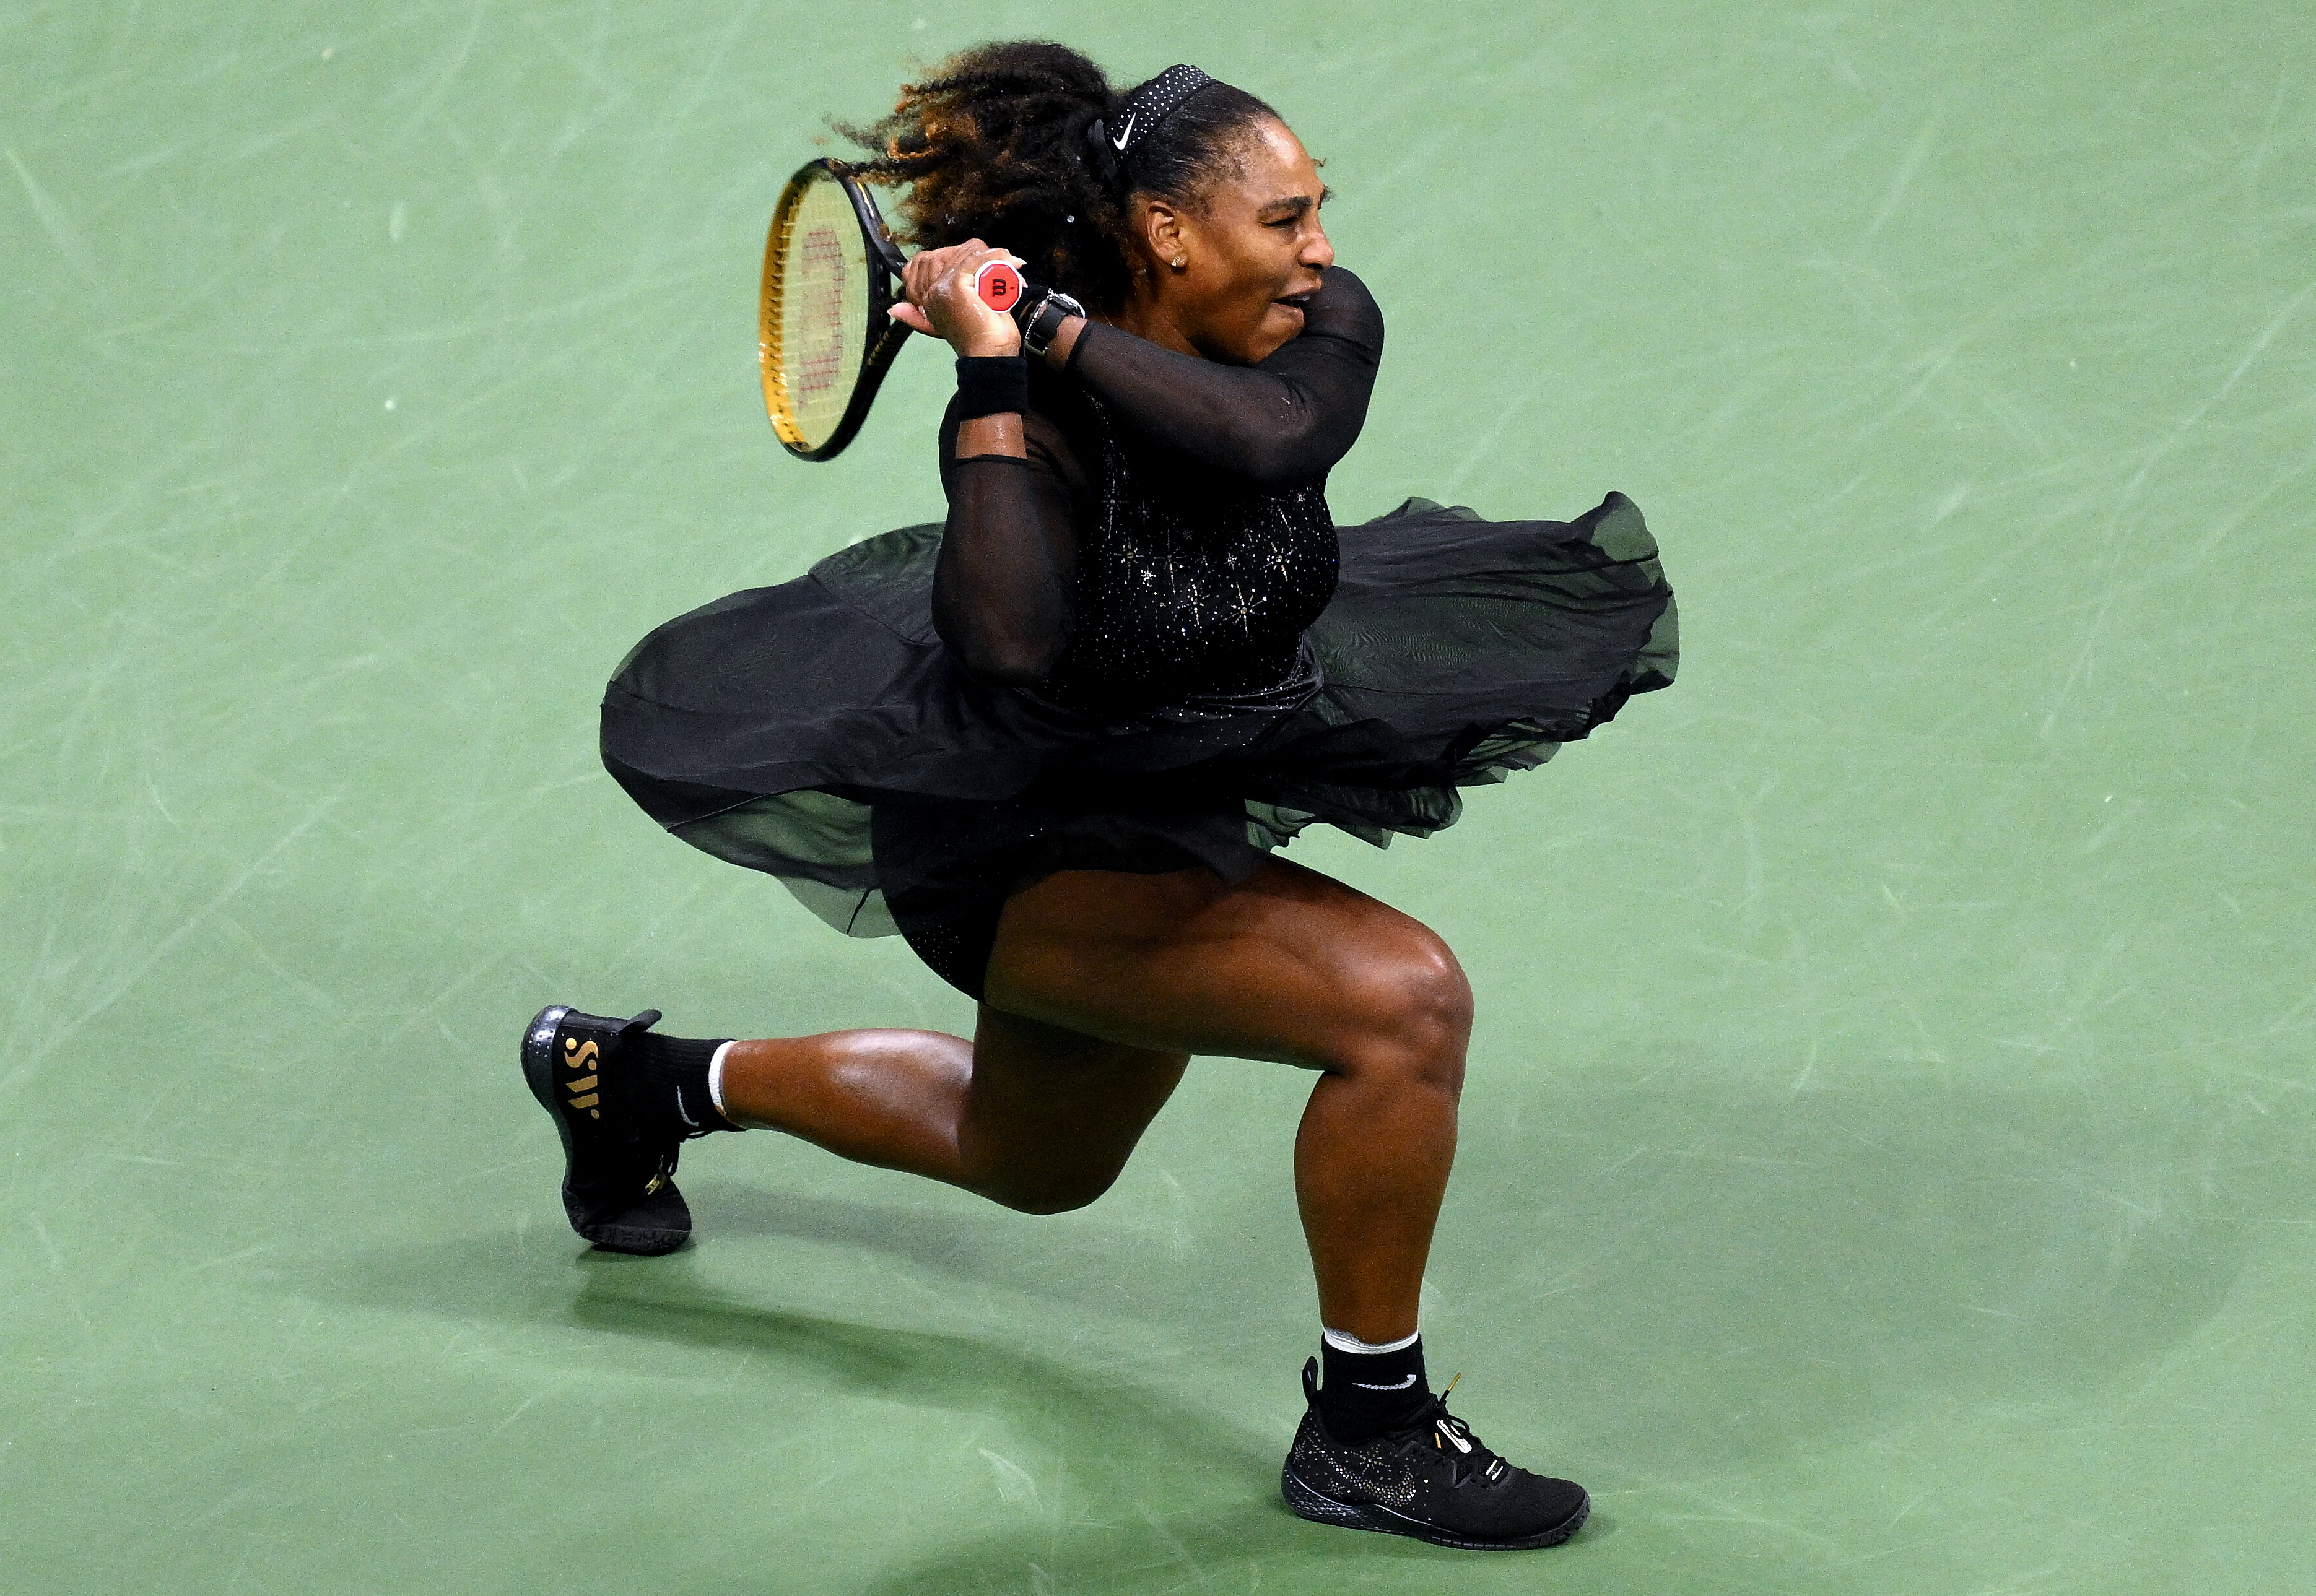 “La más grande de todos los tiempos”: Celebridades homenajearon a Serena Williams en su despedida del tenis